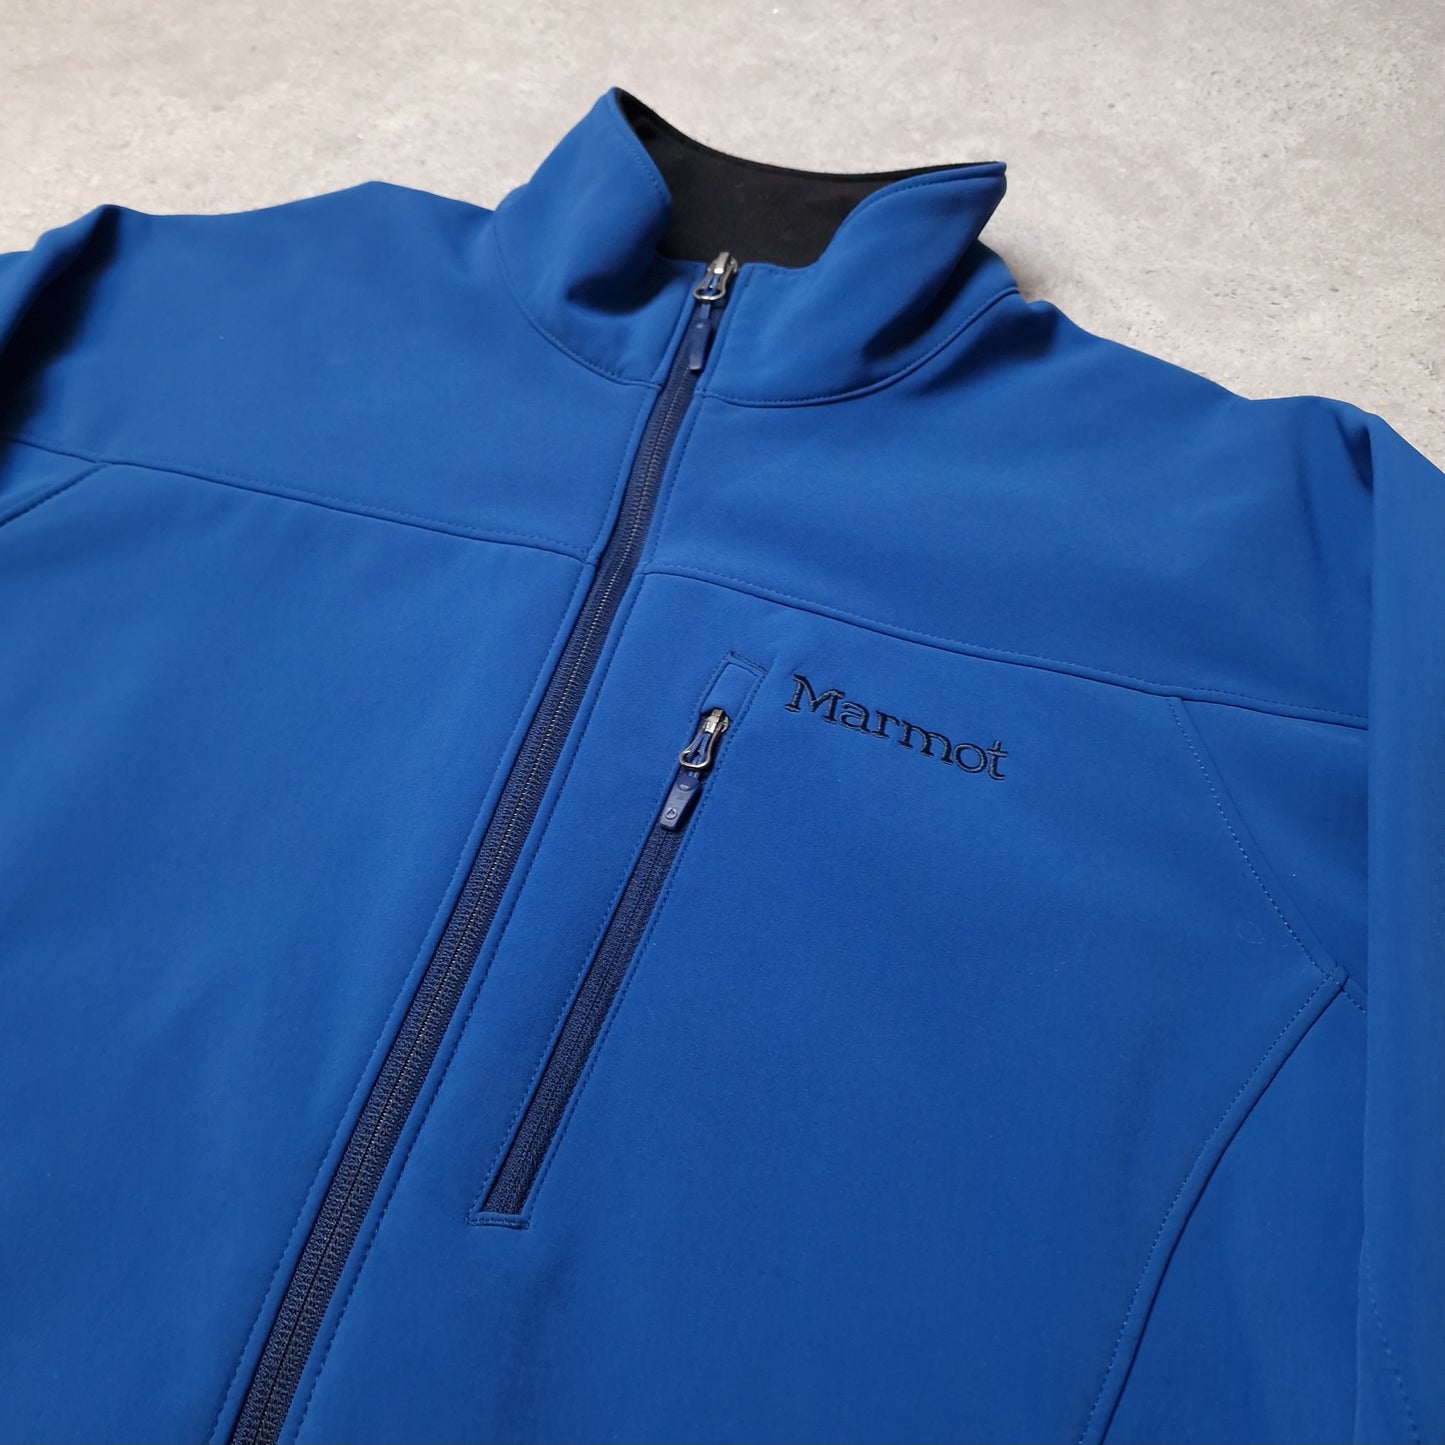 Marmot soft shell jacket in blue - medium